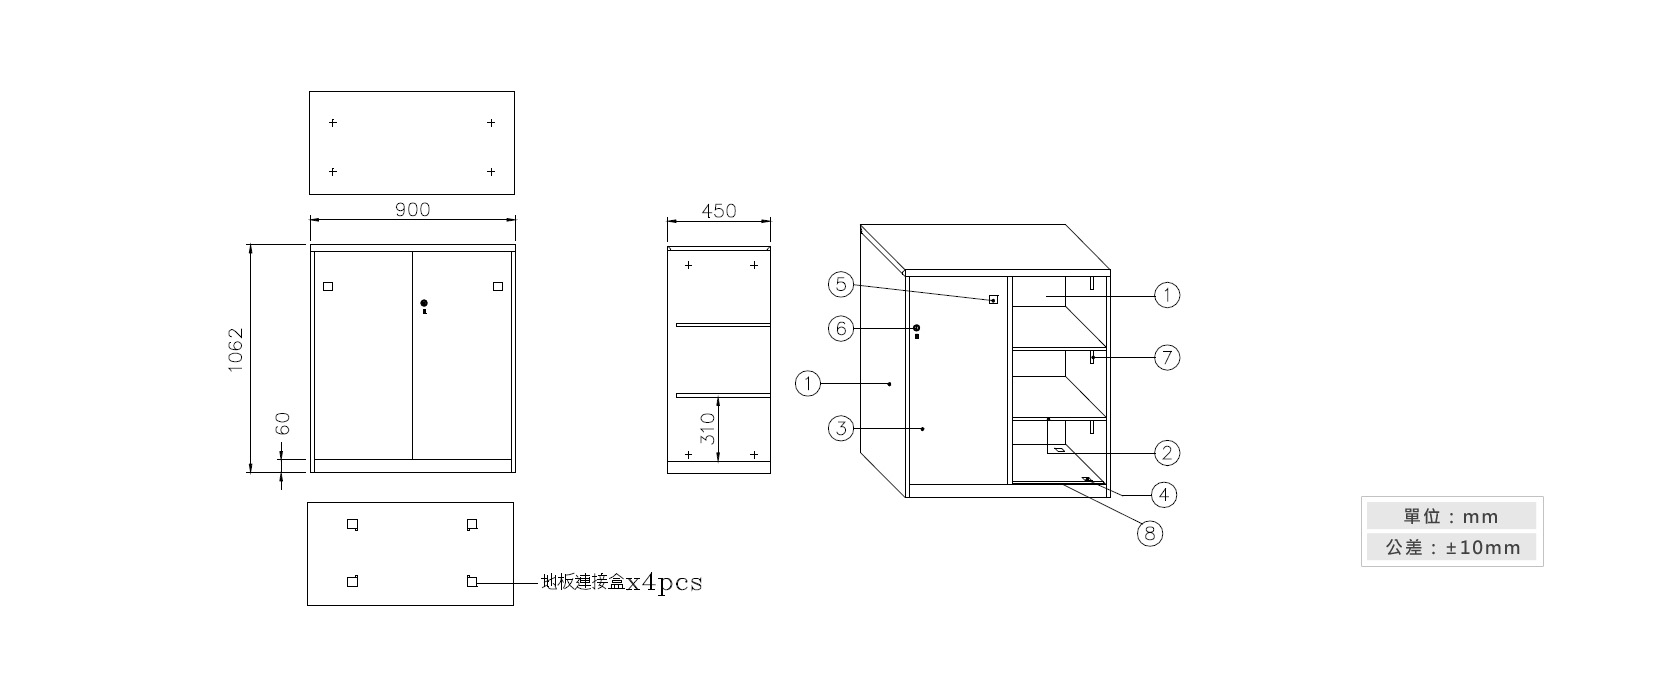 3-16 鐵拉門下置式鋼製公文櫃材質說明